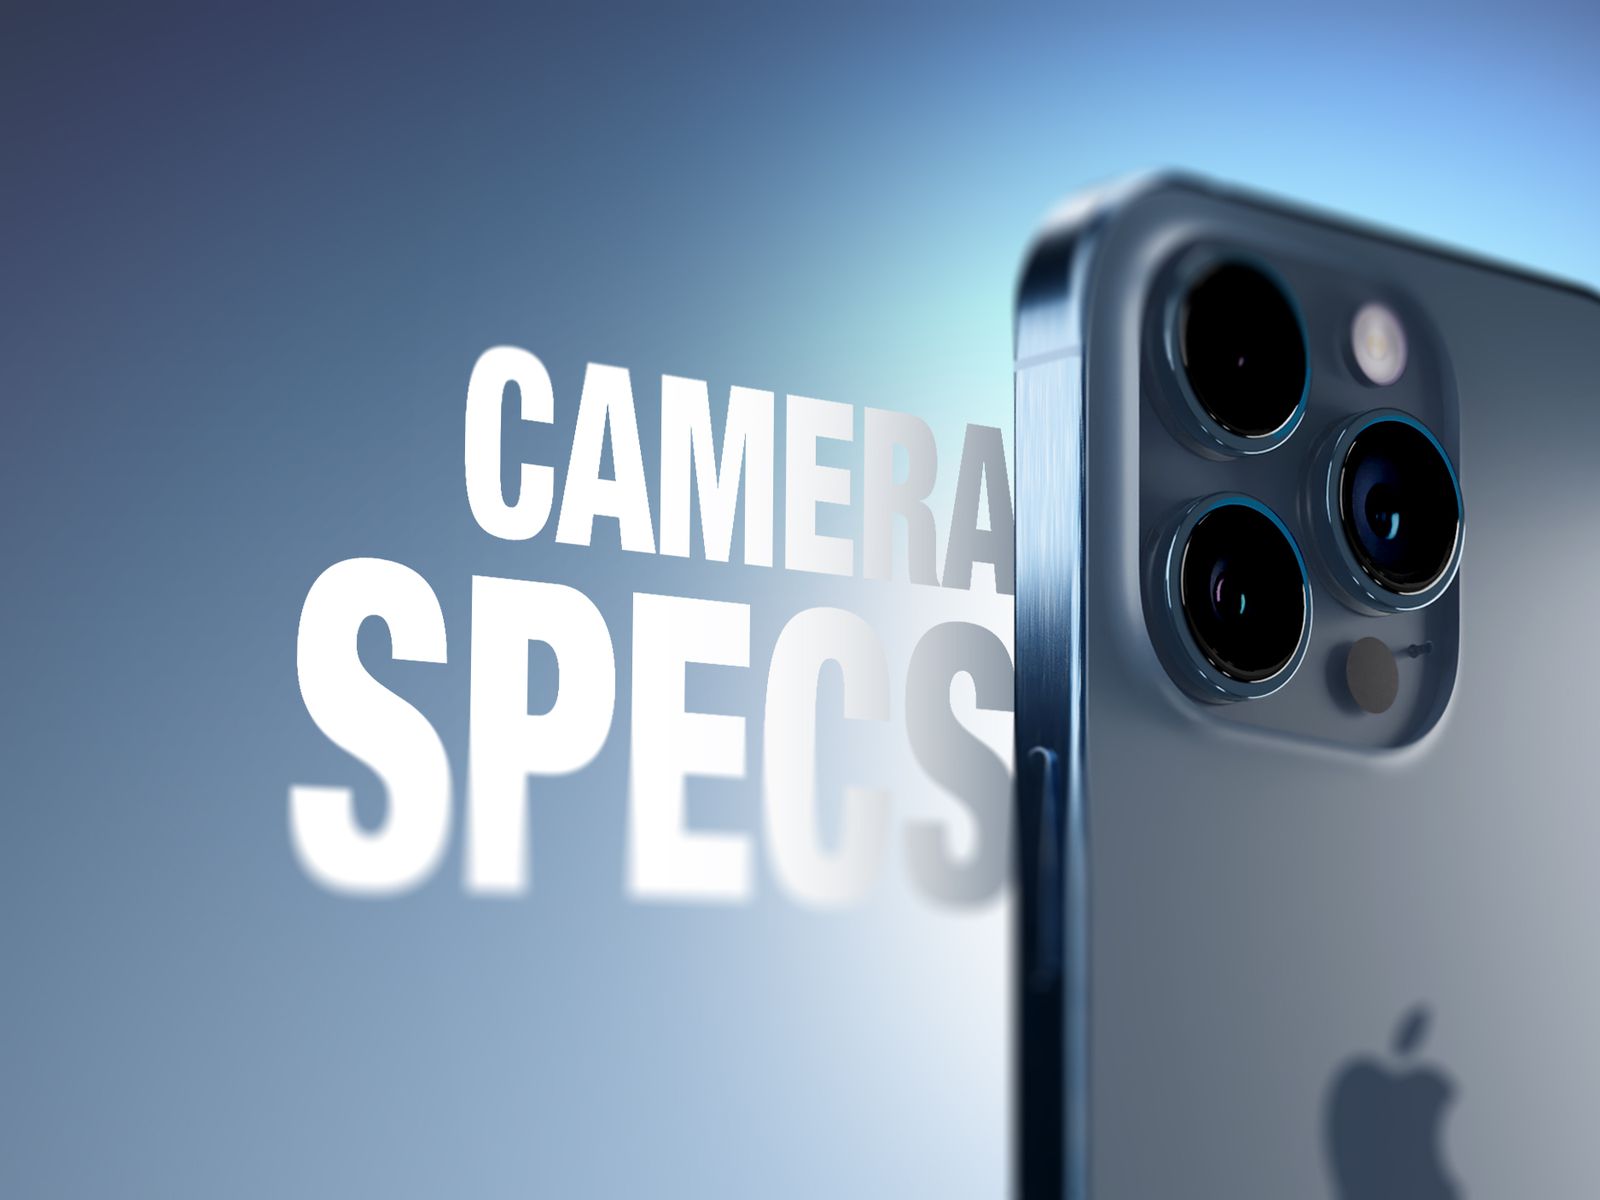 iPhone 15 mini : Specs, Pricing, Top 11 Features (Rumoured)